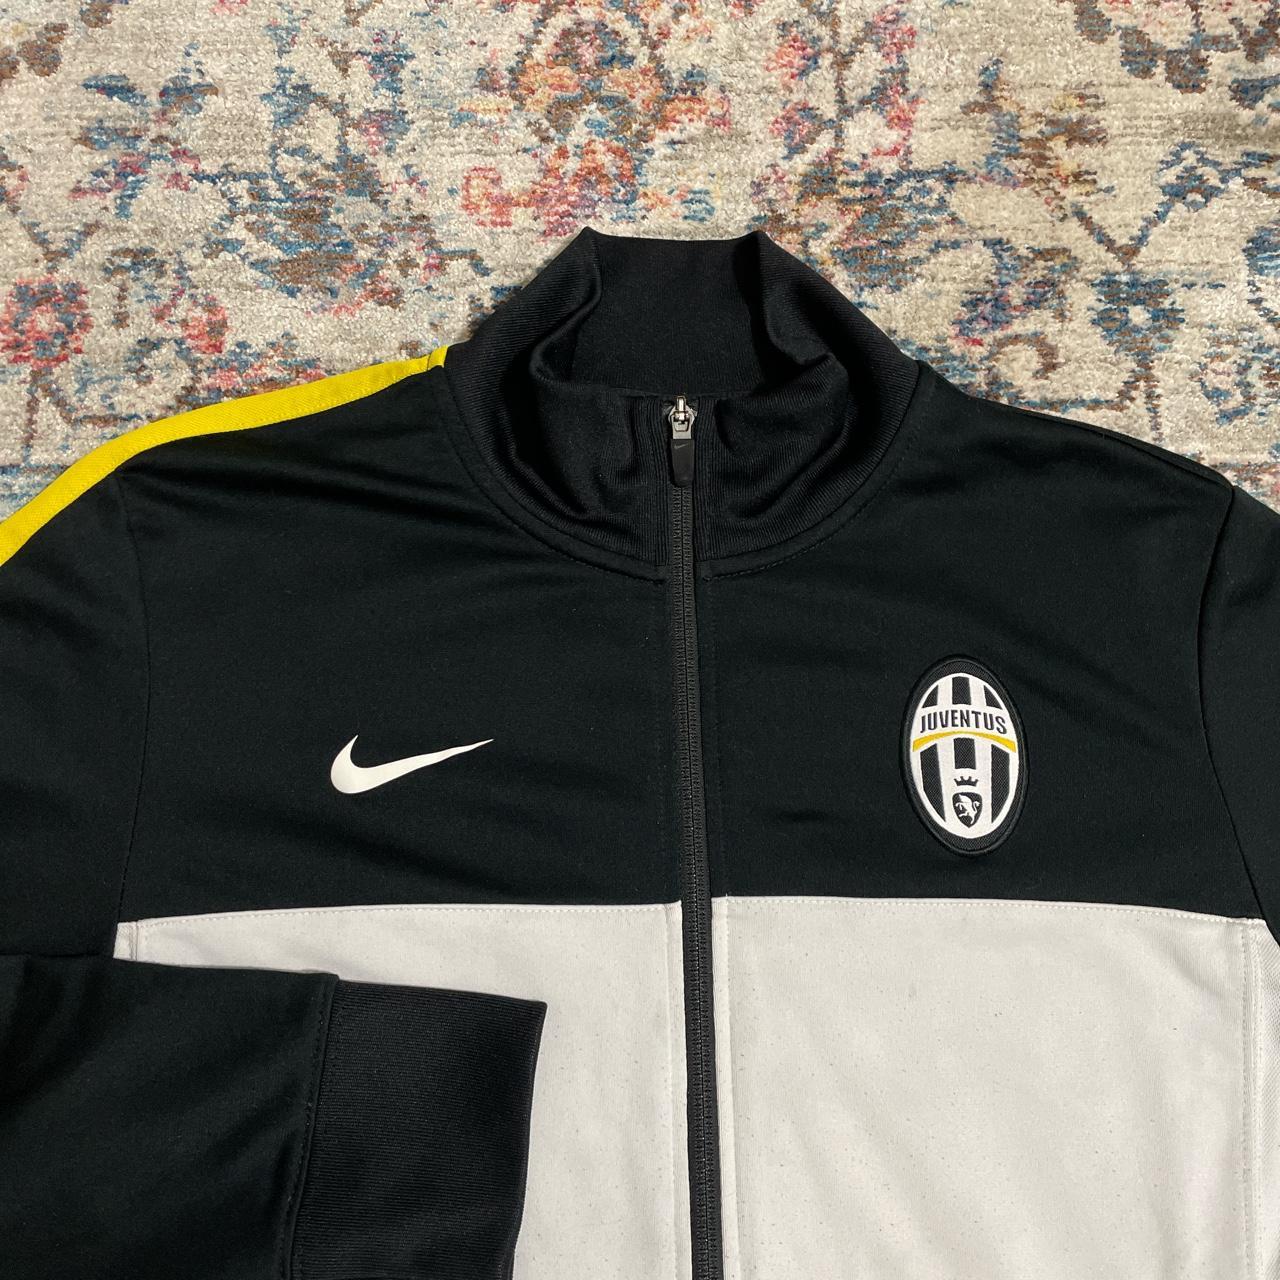 Juventus Nike Training Jacket